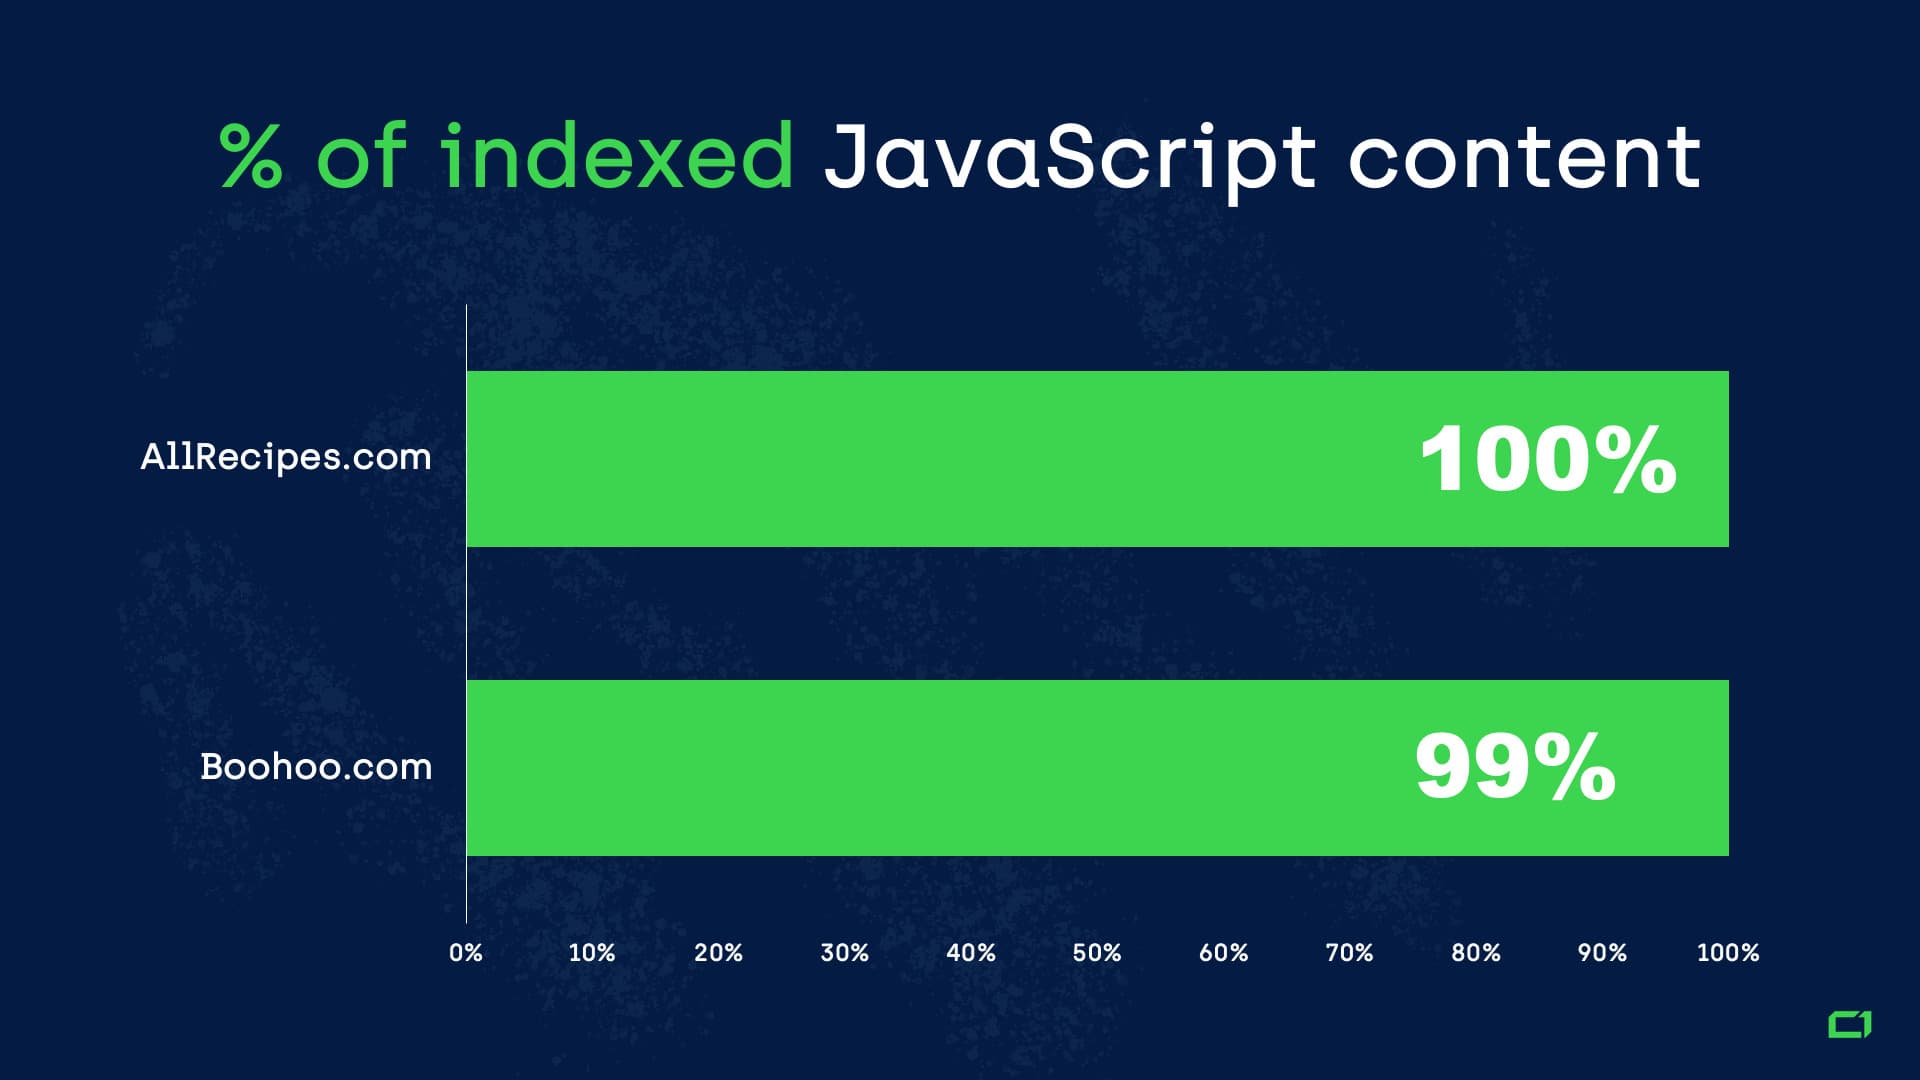 A bar graph represents the percentage of indexed JavaScript content of websites like AllRecipes.com and Boohoo.com.